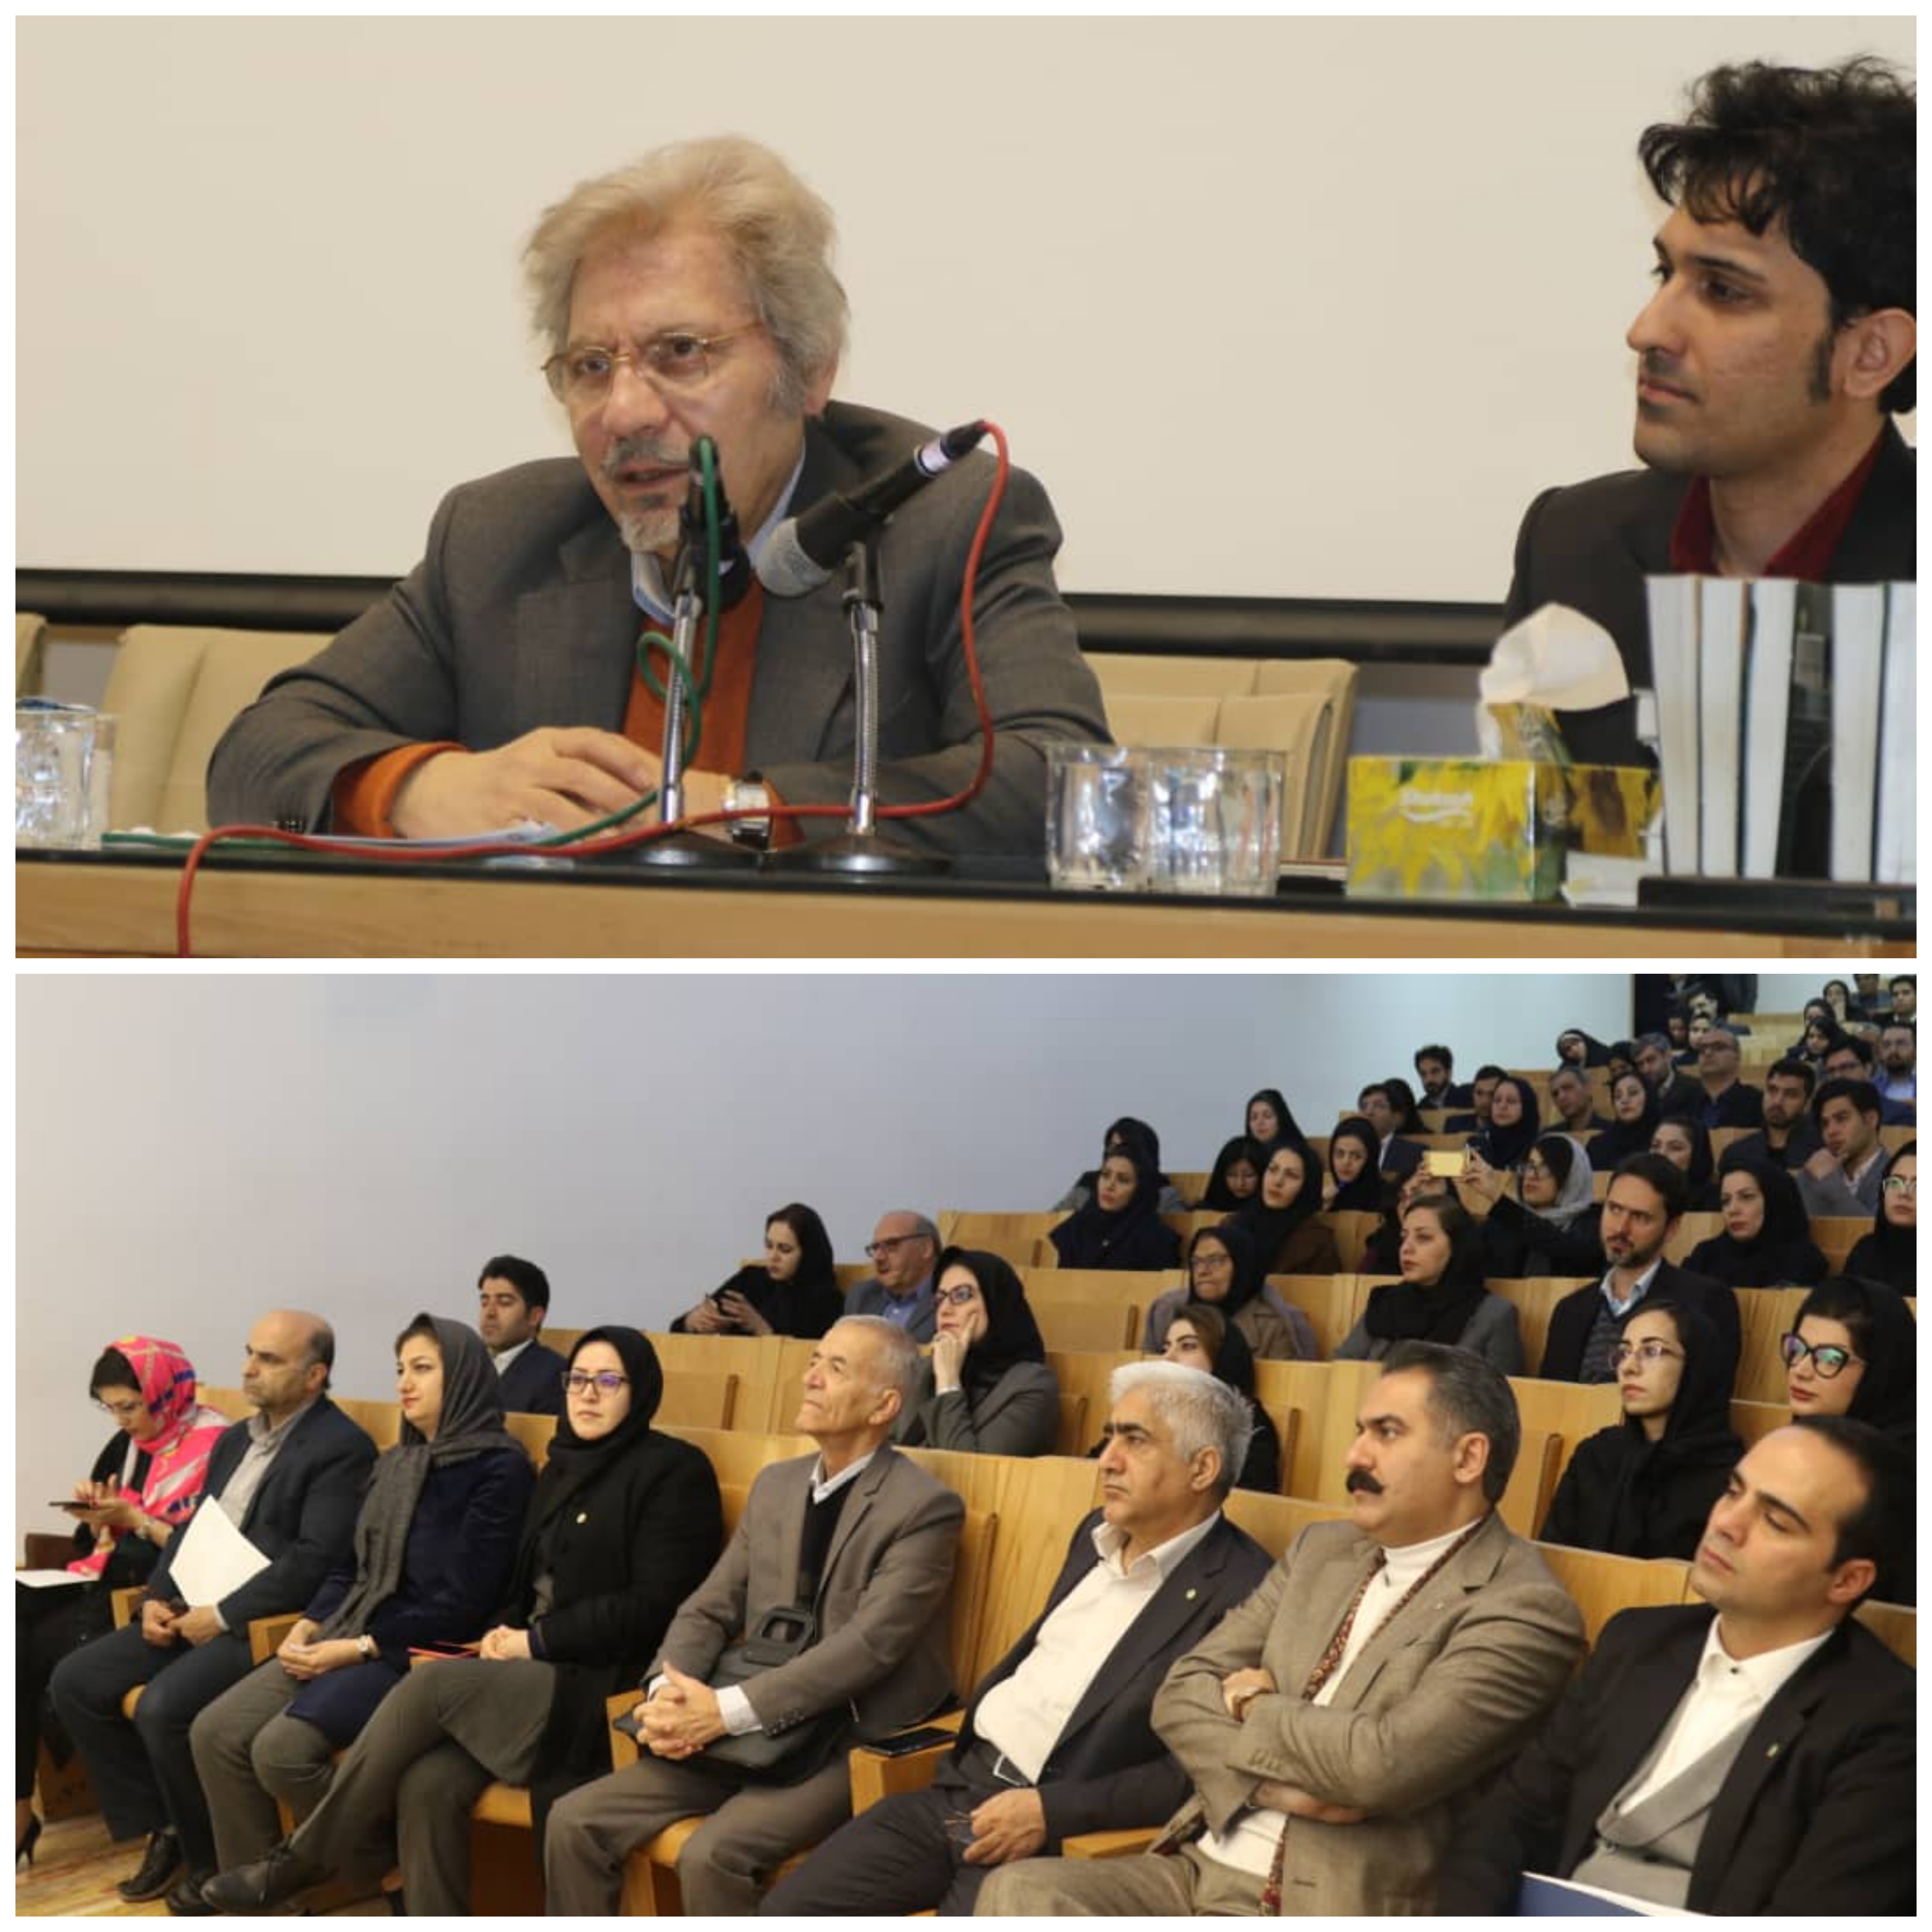 نشست "وکالت در محاکم بین المللی" با حضور دکتر محسن محبی برگزار شد.